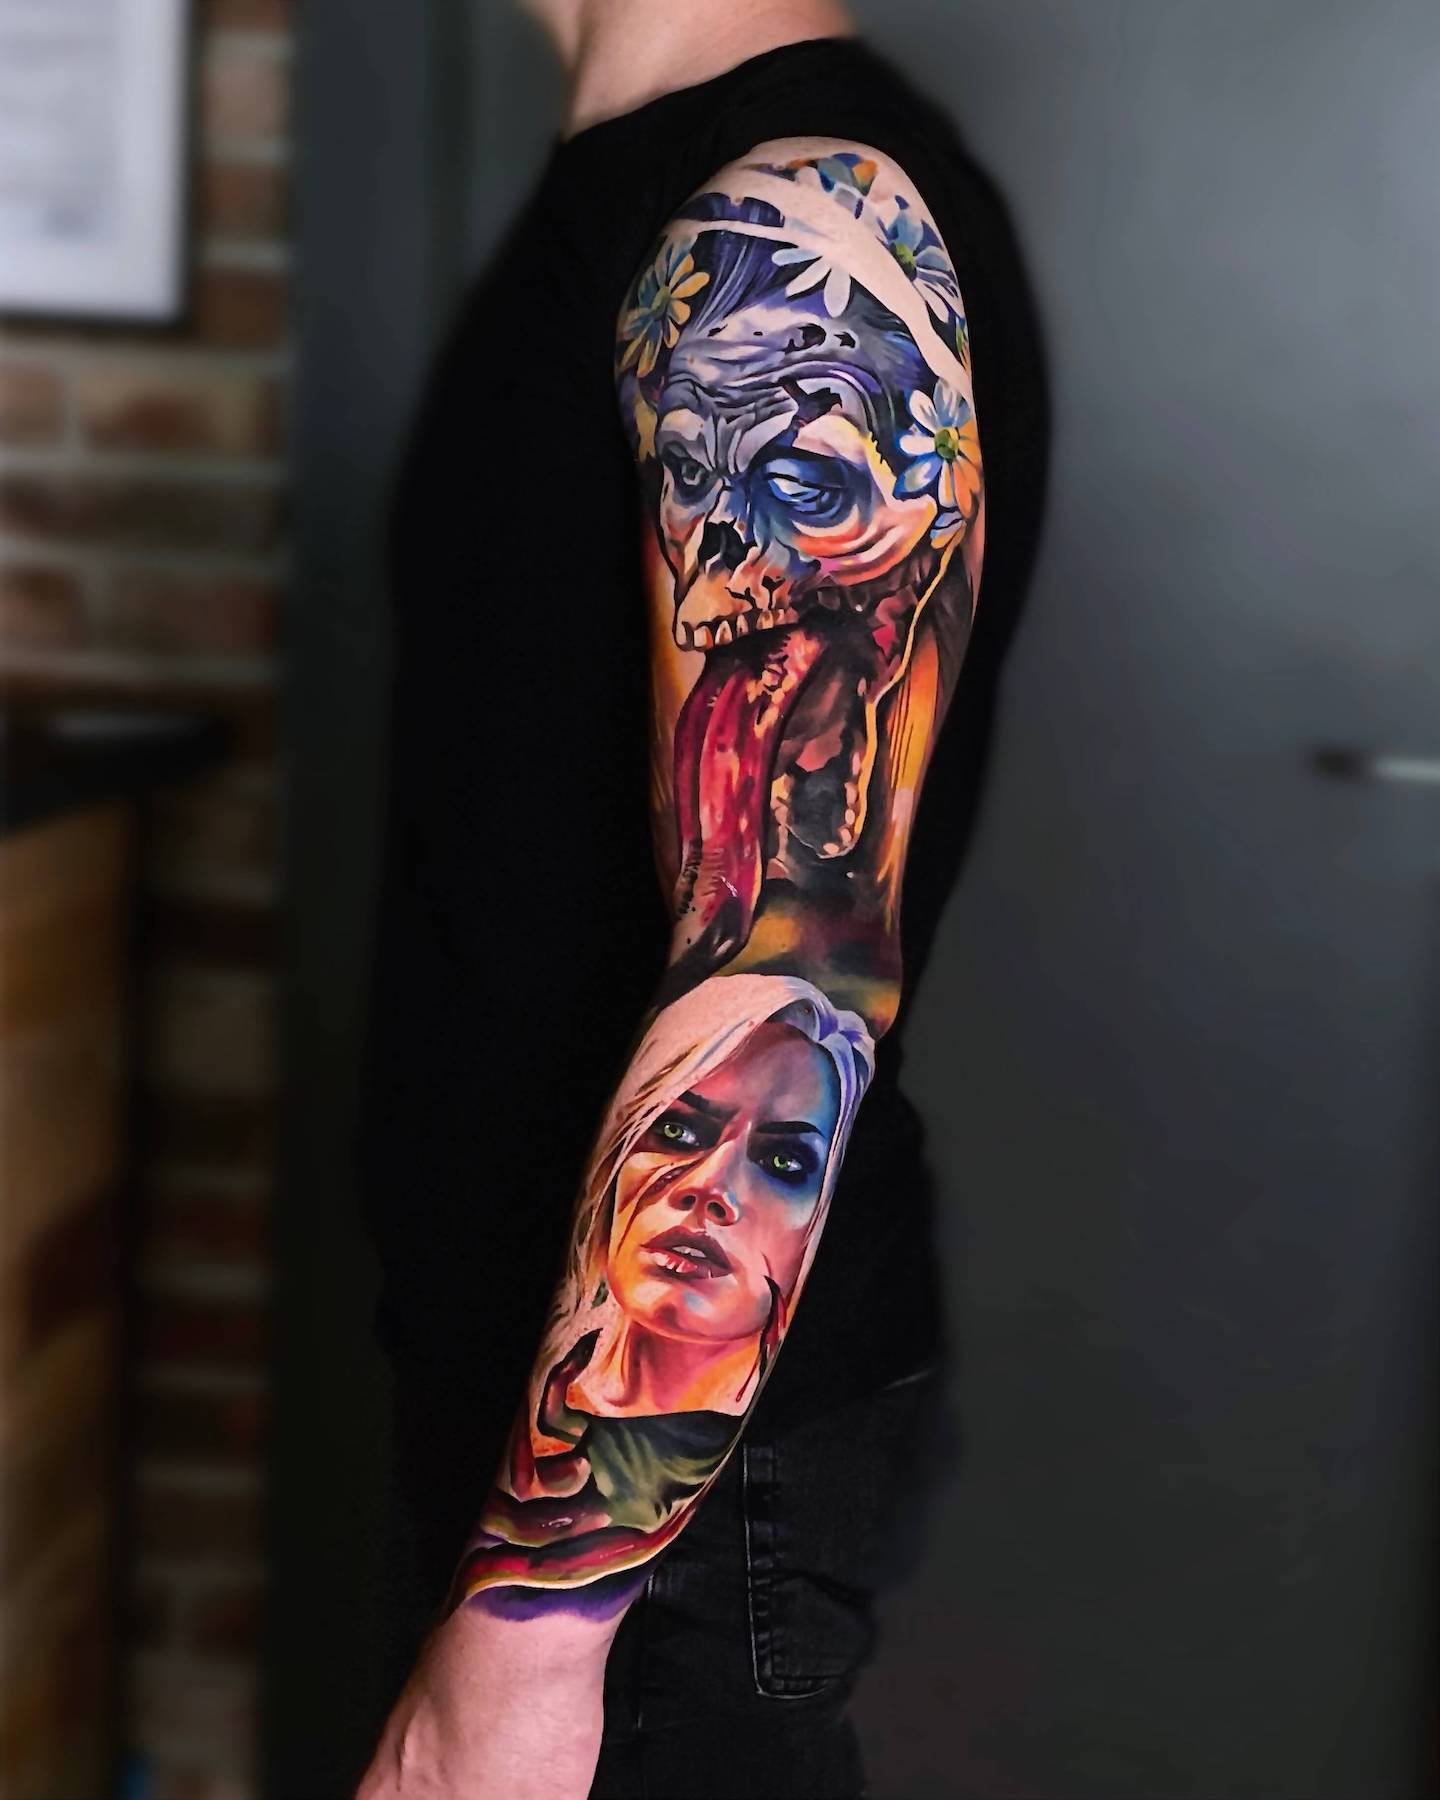 Kejti Dumka - tatuaż Południcy